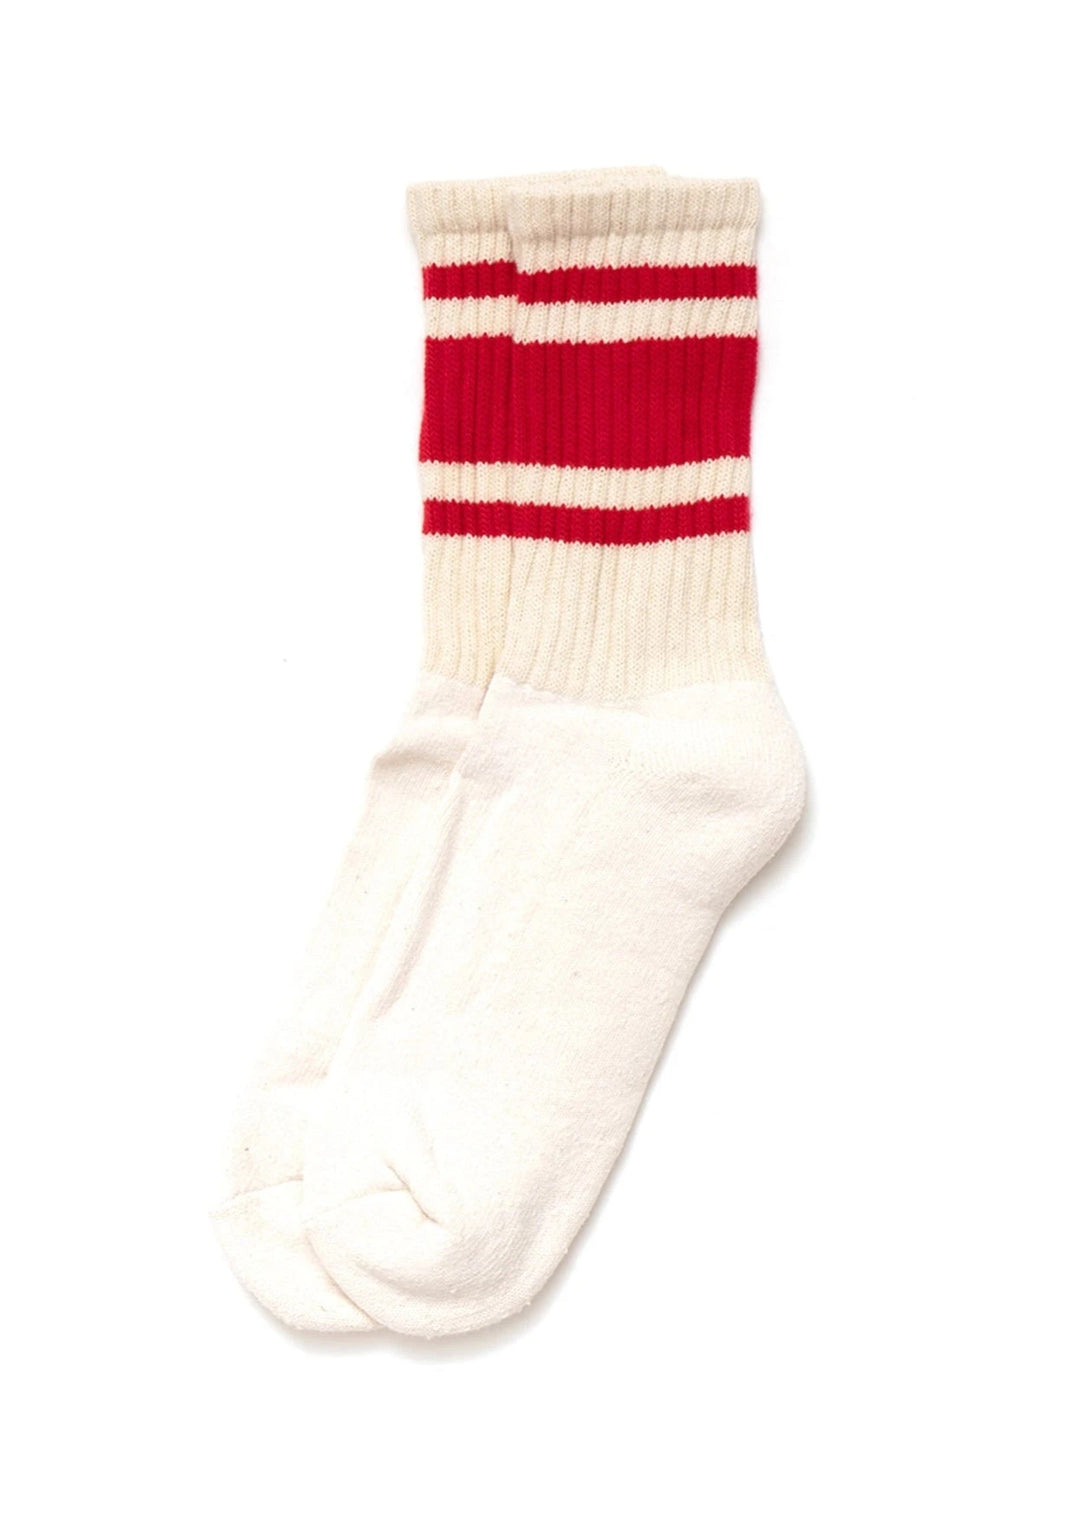 Mono Stripe Socks - Red